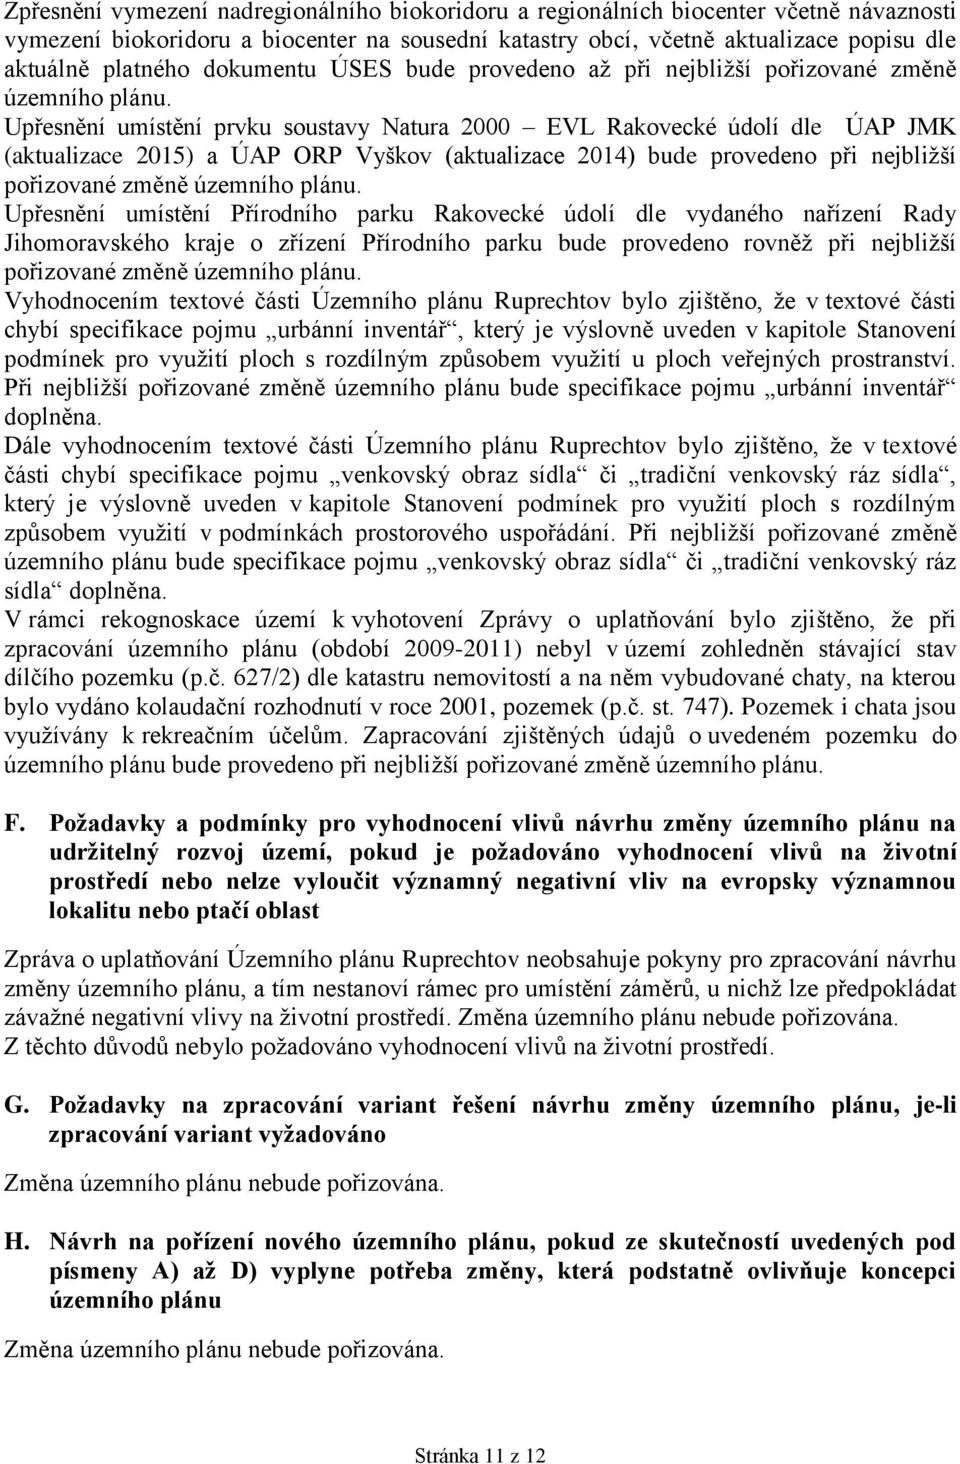 Upřesnění umístění prvku soustavy Natura 2000 EVL Rakovecké údolí dle ÚAP JMK (aktualizace 2015) a ÚAP ORP Vyškov (aktualizace 2014) bude provedeno při nejbližší pořizované změně územního plánu.